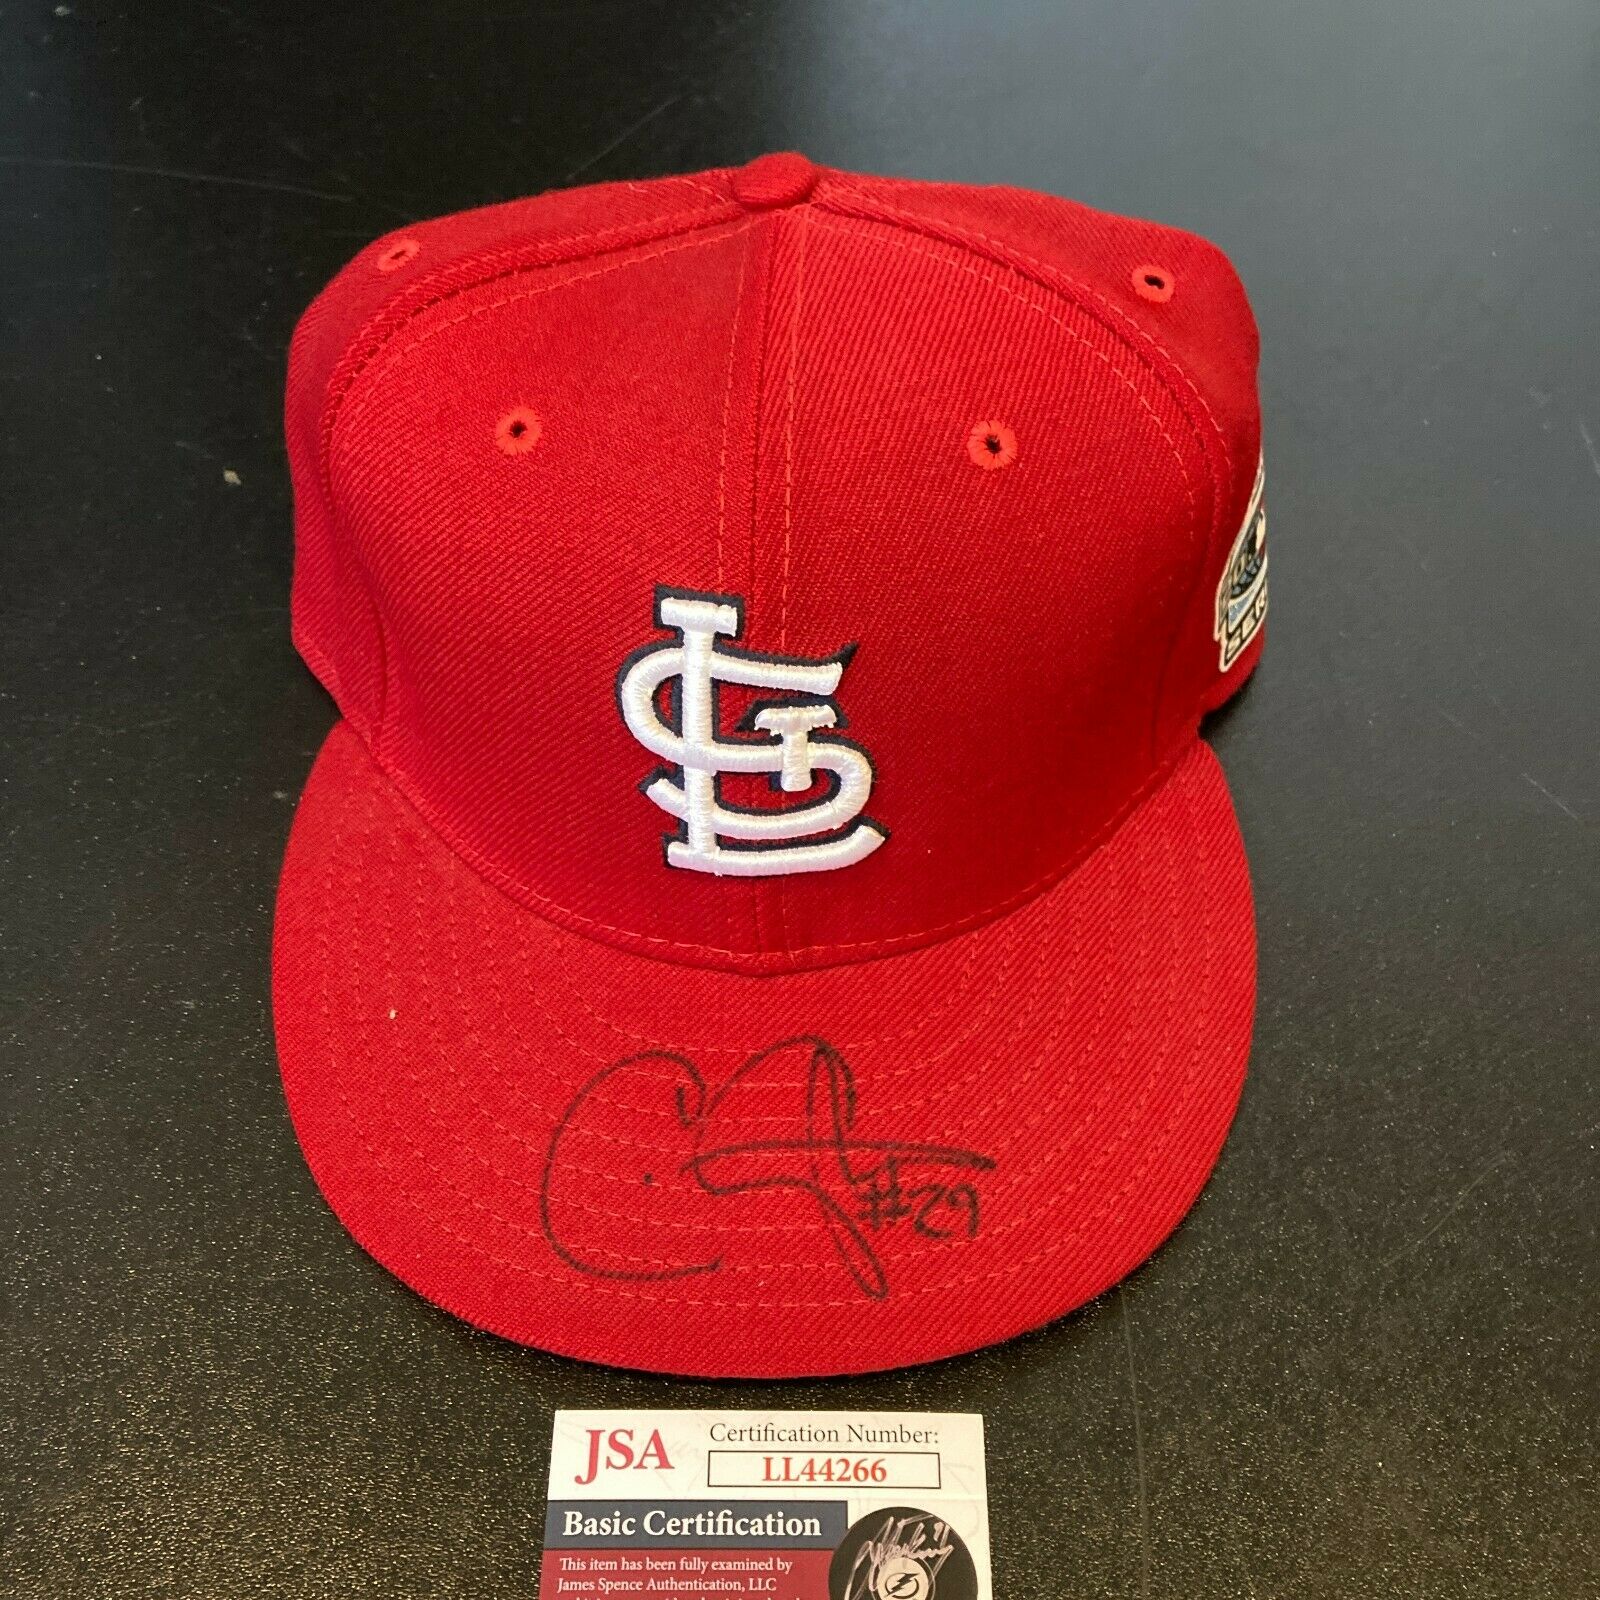 St. Louis Cardinals Chris Carpenter Autographed Photo